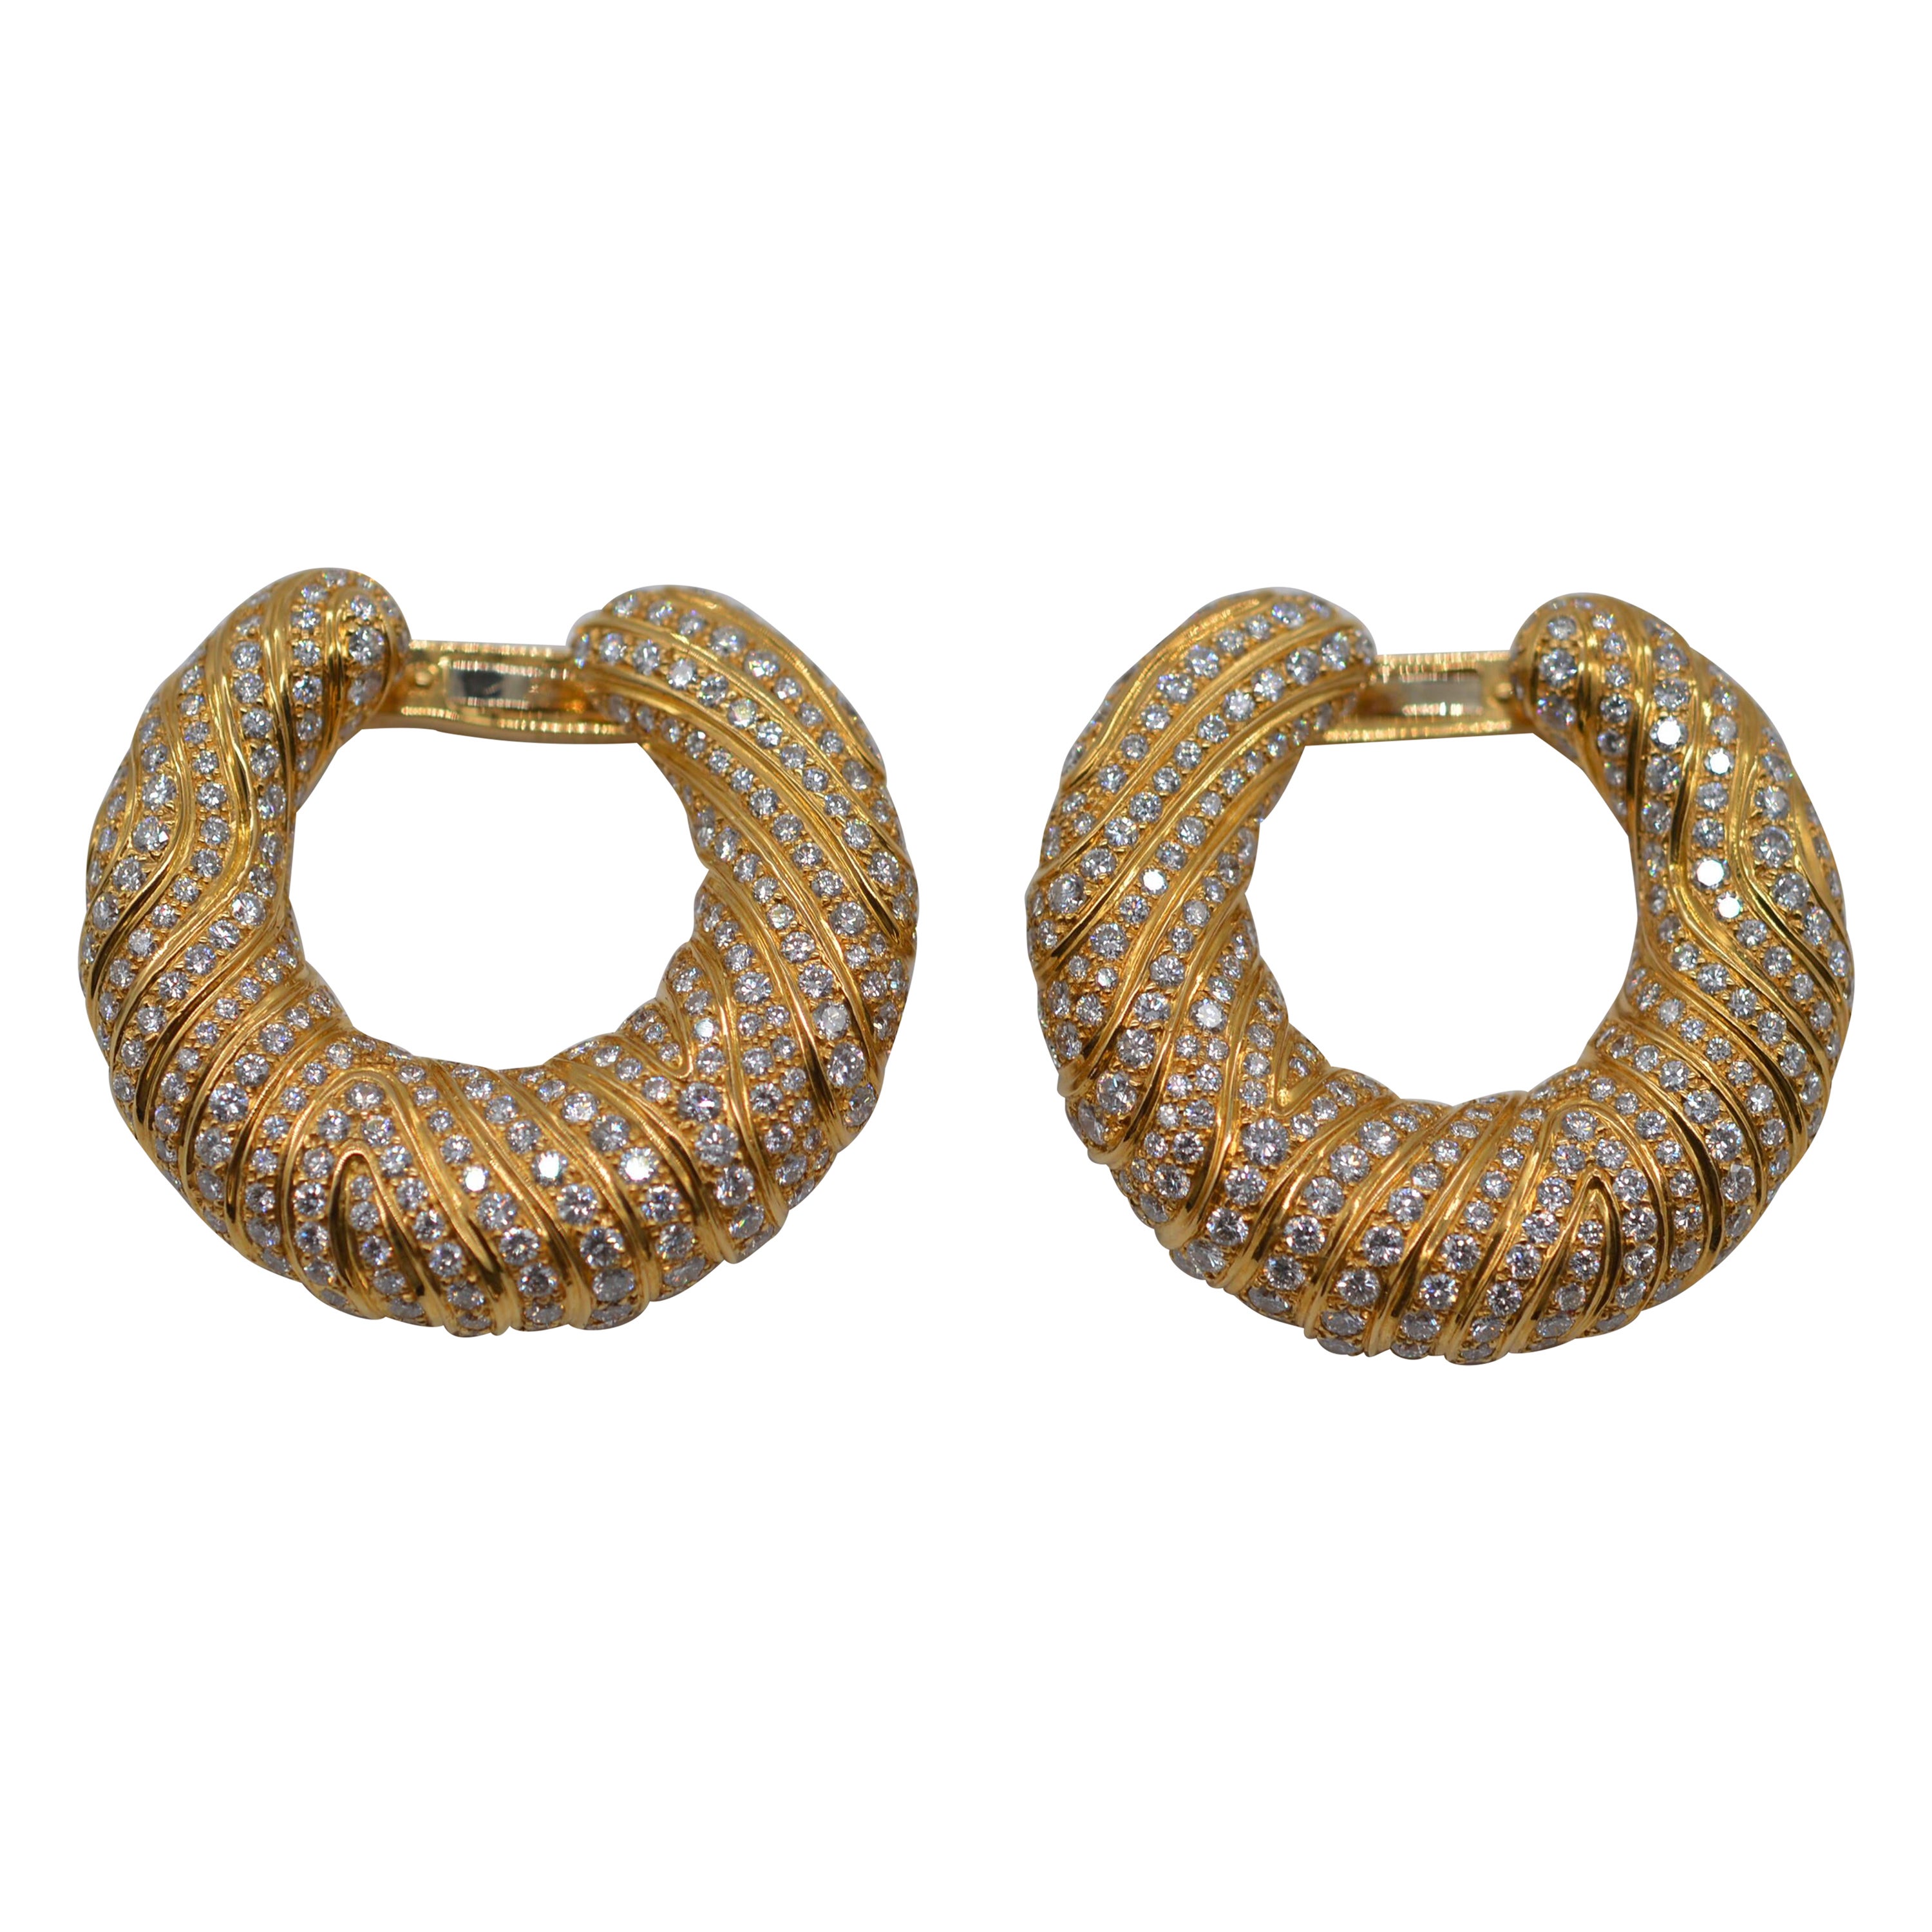 Cartier Hoop Earrings 18K Yellow Gold with Diamonds Unworn